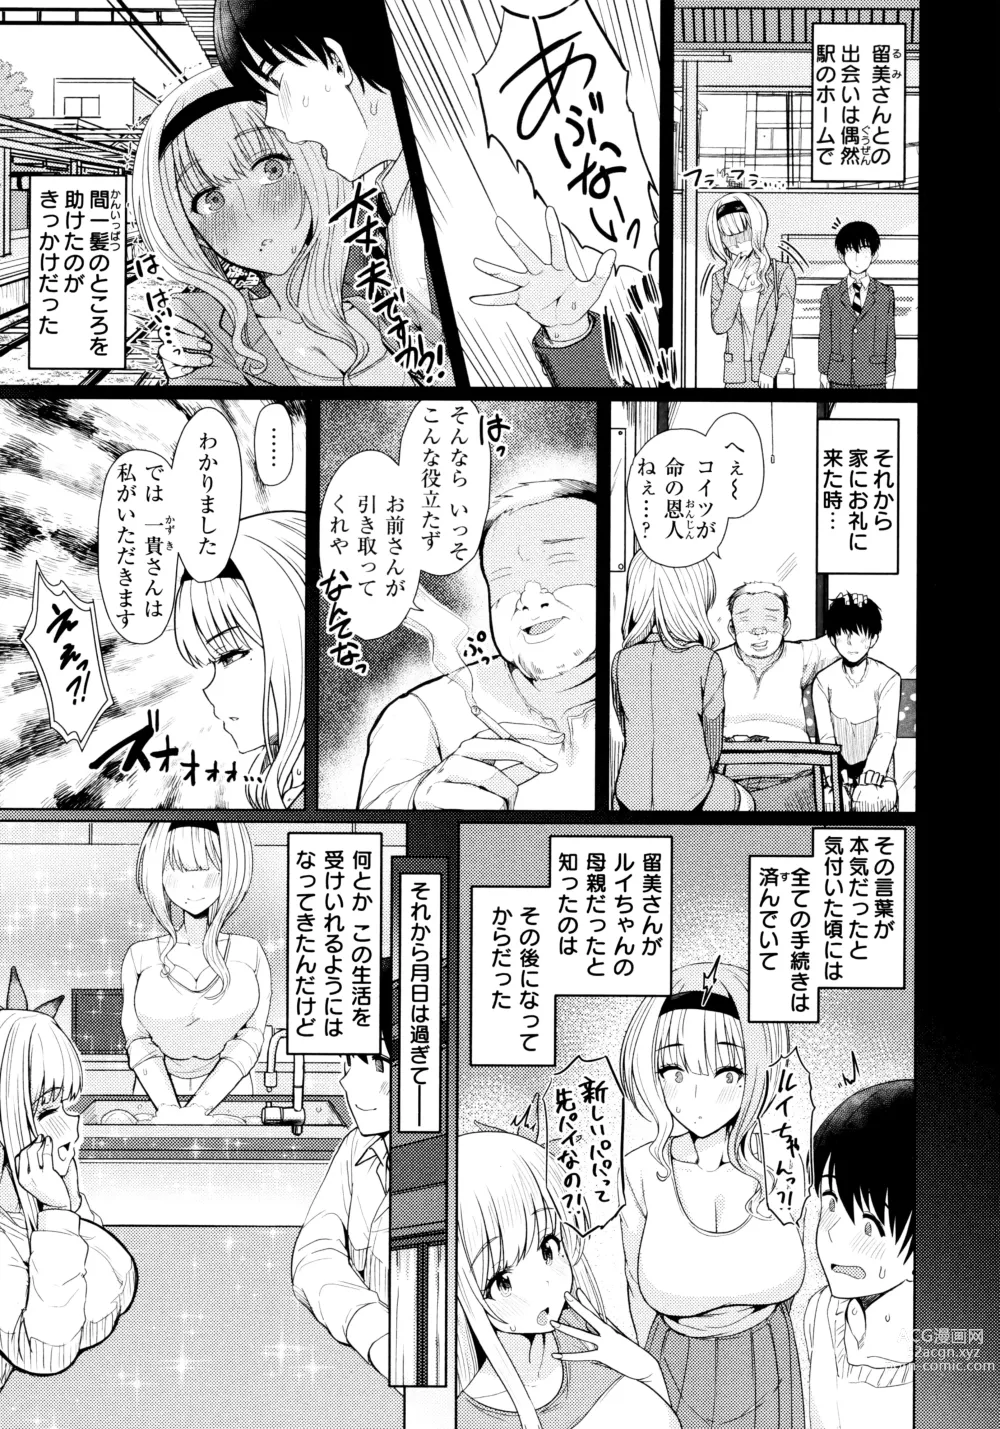 Page 7 of manga Nukunuku Seikatsu - Life Full of Sex + Melonbooks Kounyu Tokuten + Toranoana Kounyu Tokuten